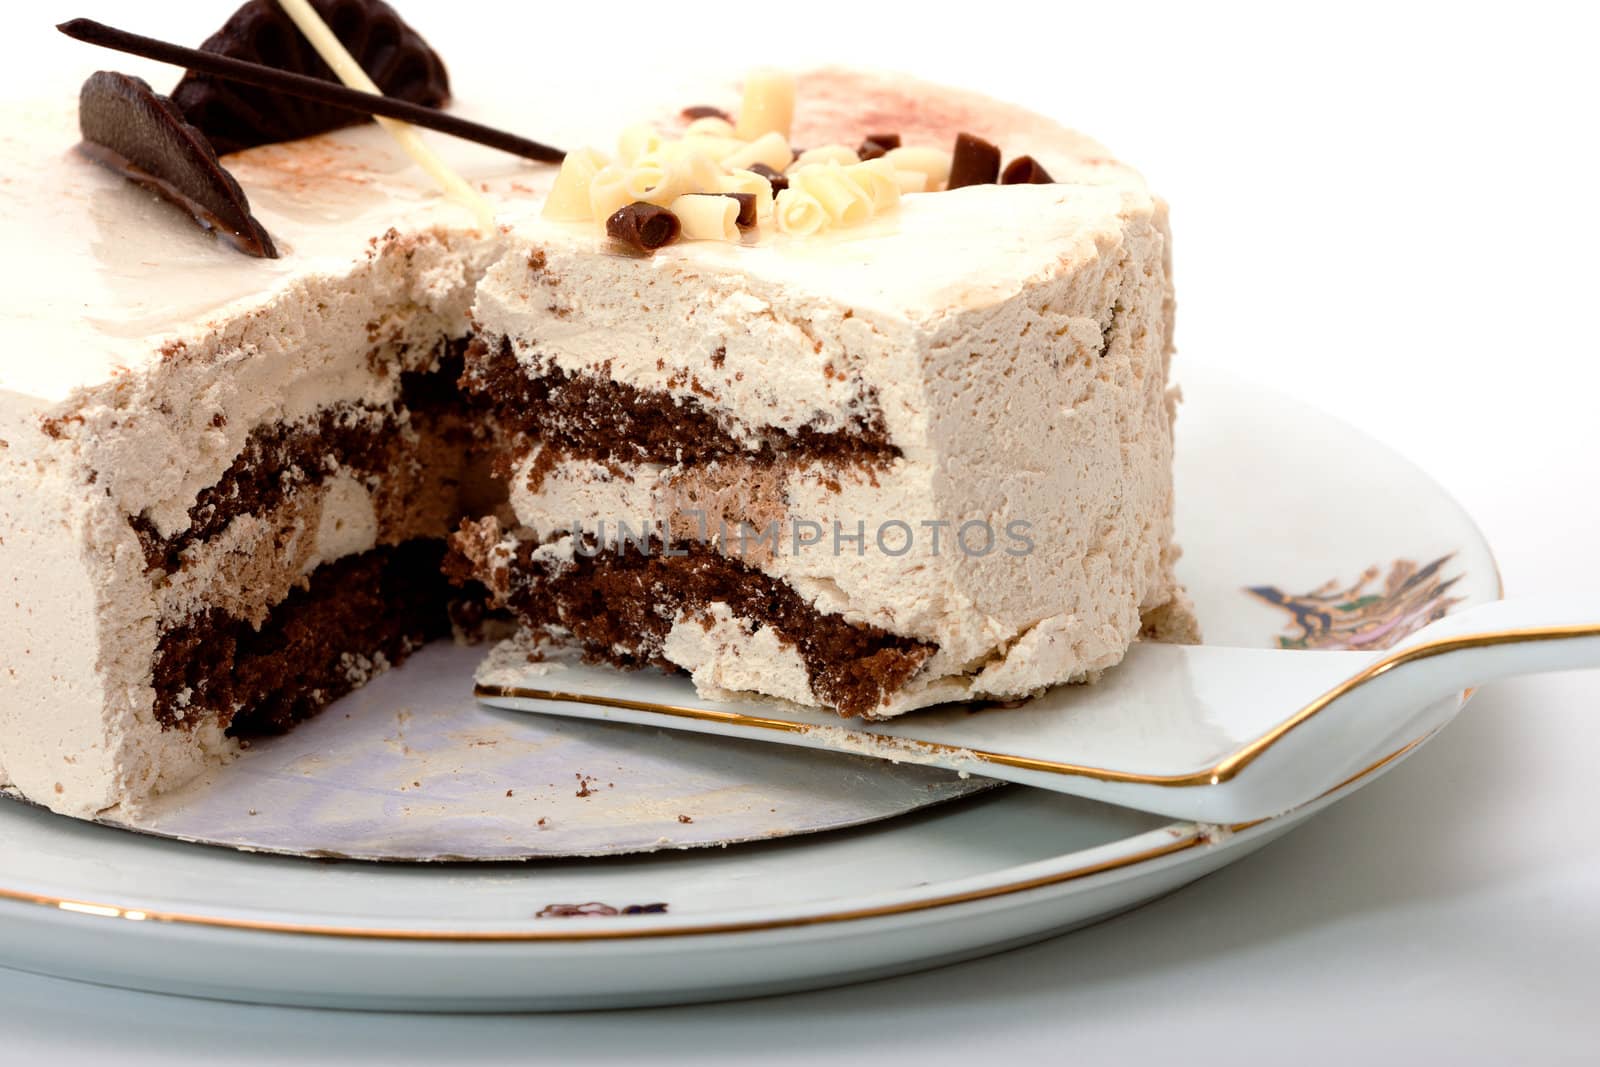 photo of cake on white background